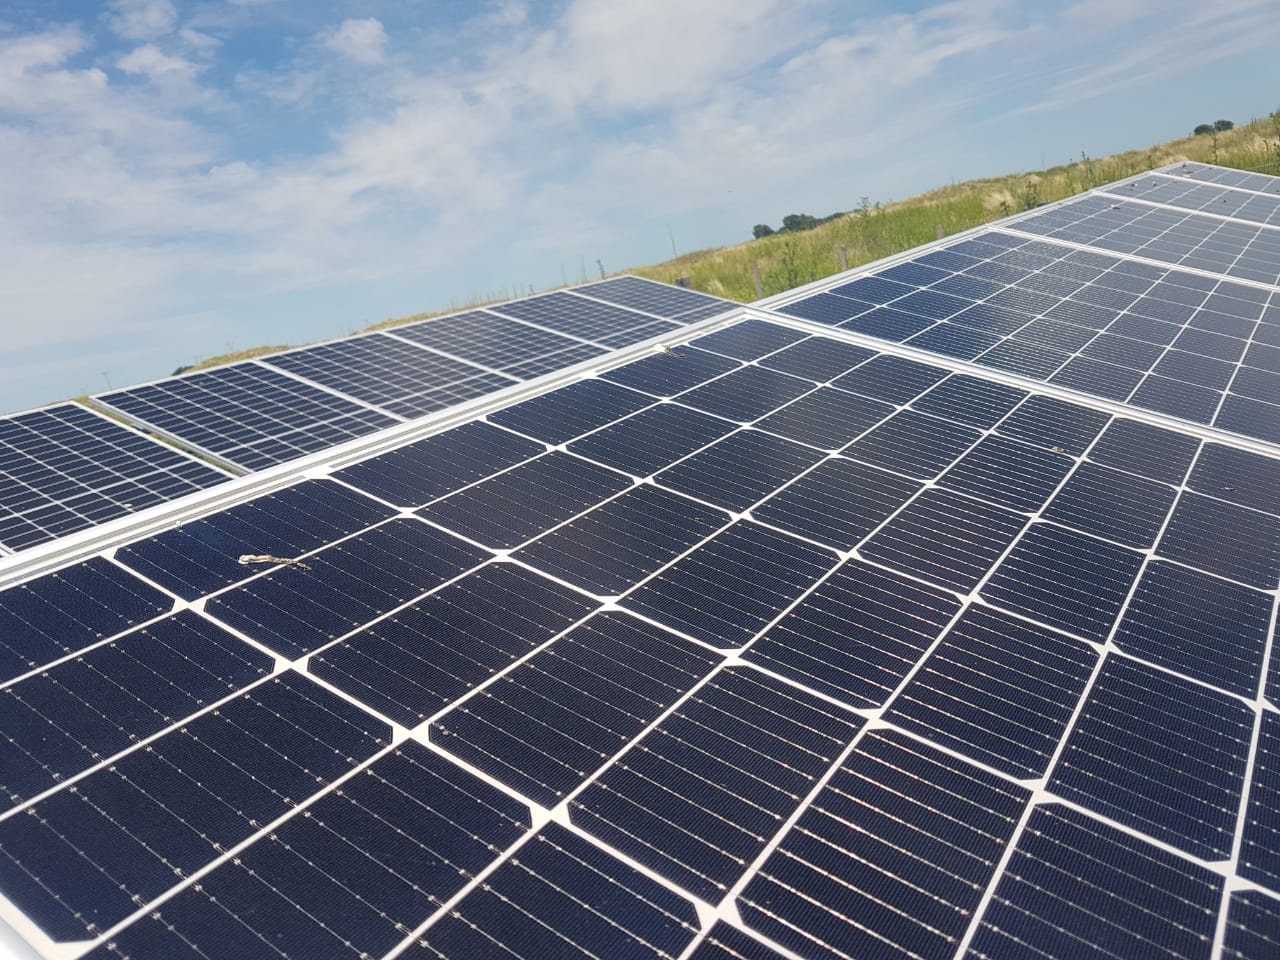 Adjudican el primer Parque Fotovoltaico que proveerá energía eléctrica al sistema provincial pampeano